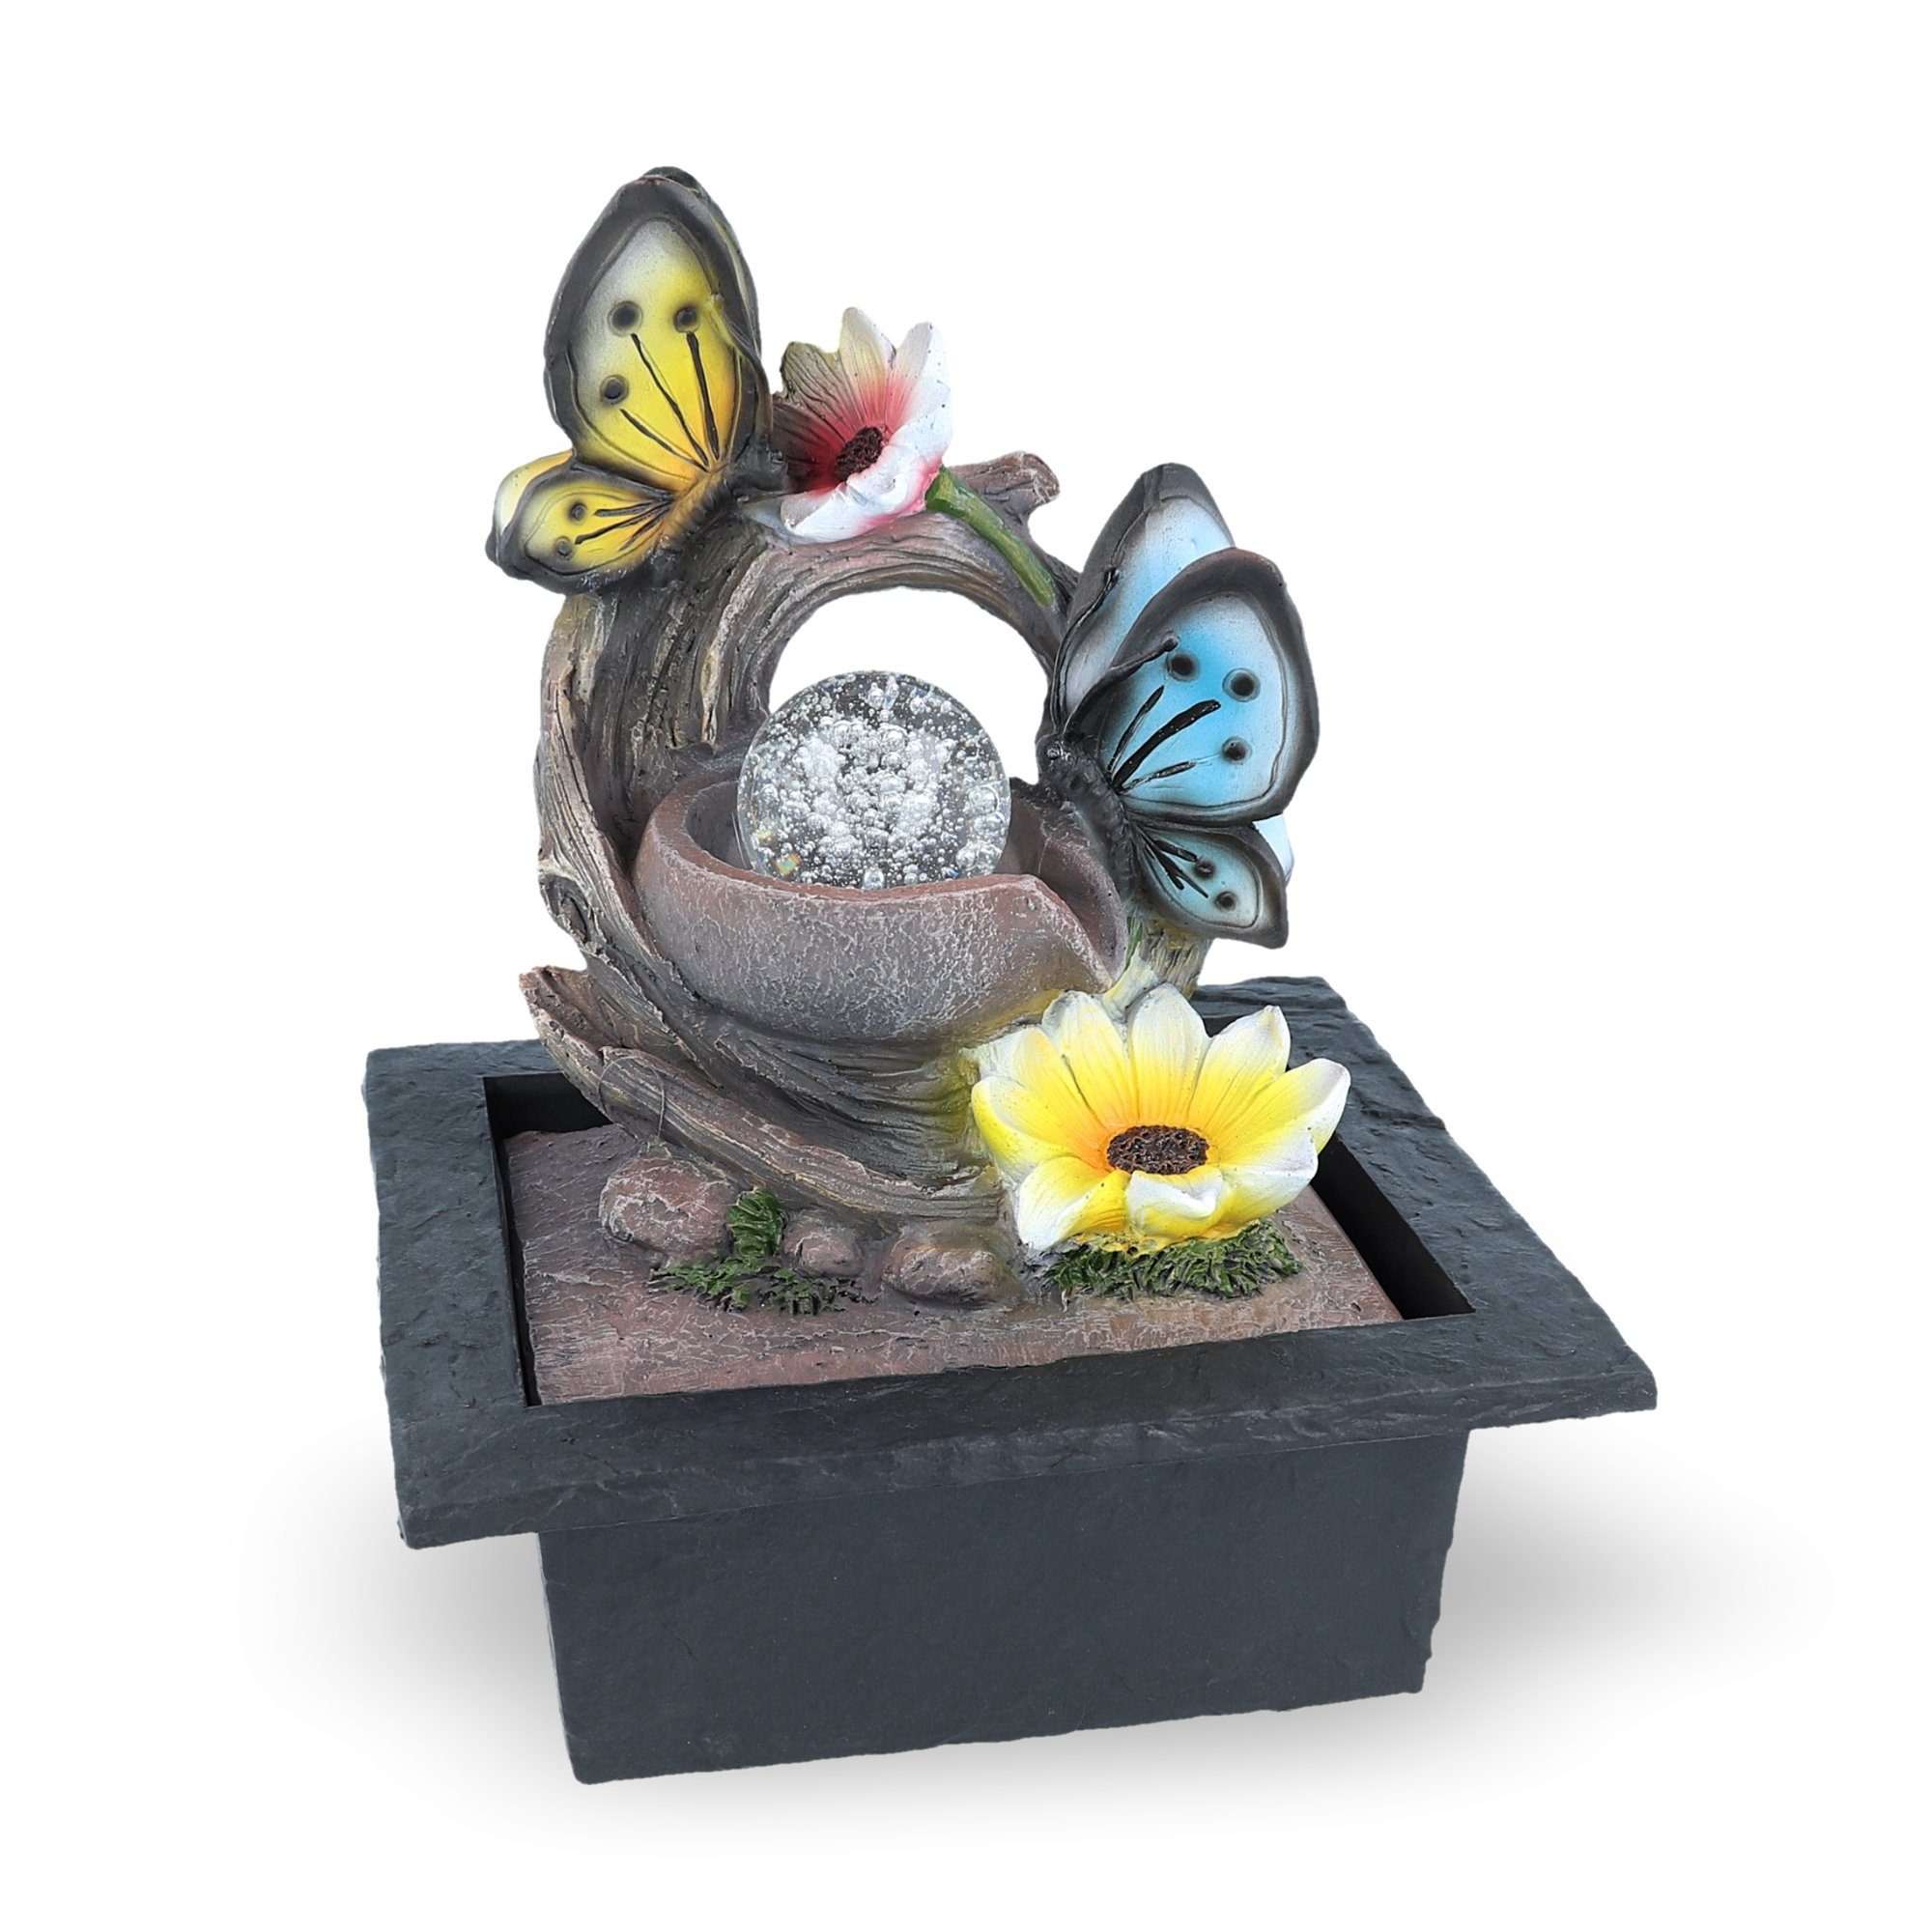 NATIV Zimmerbrunnen Motiv-Tischbrunnen mit Pumpe und Beleuchtung, LED-Beleuchtung Schmetterling